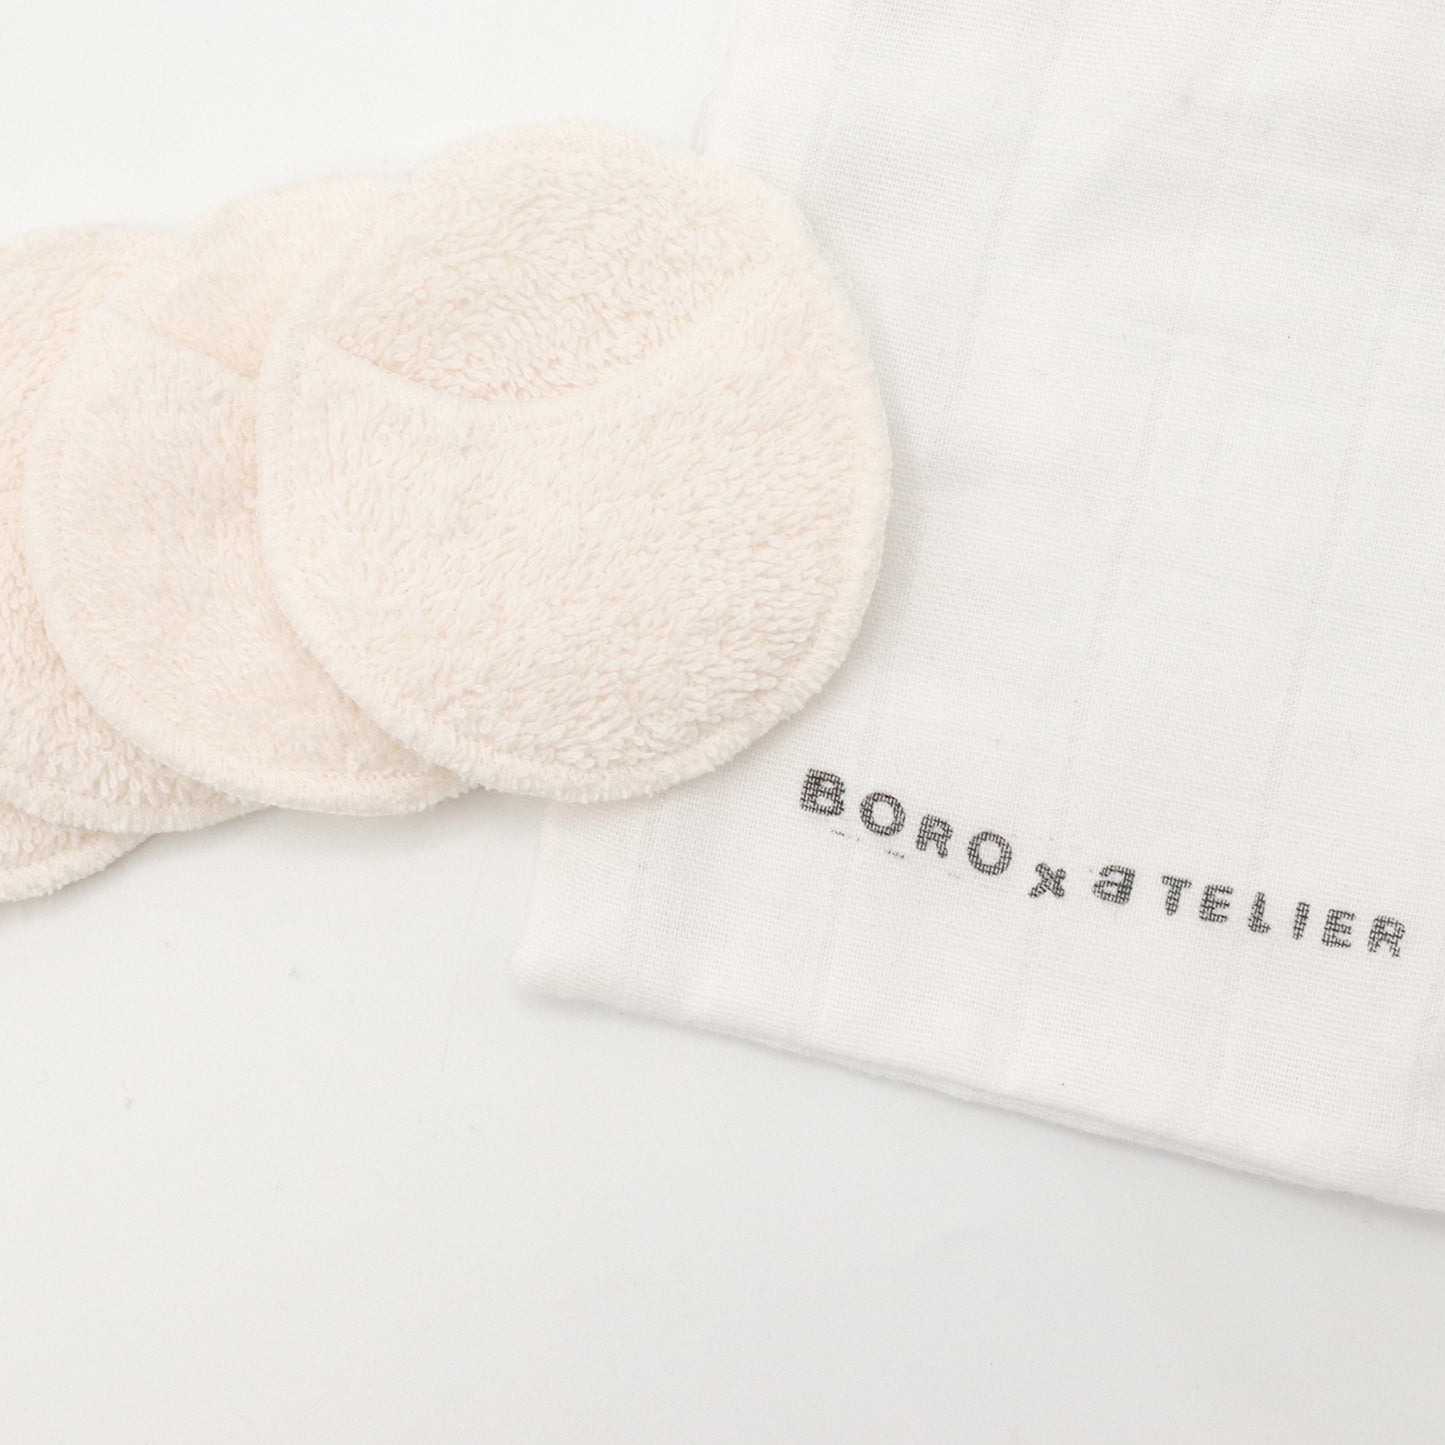 reusable organic cotton makeup pads